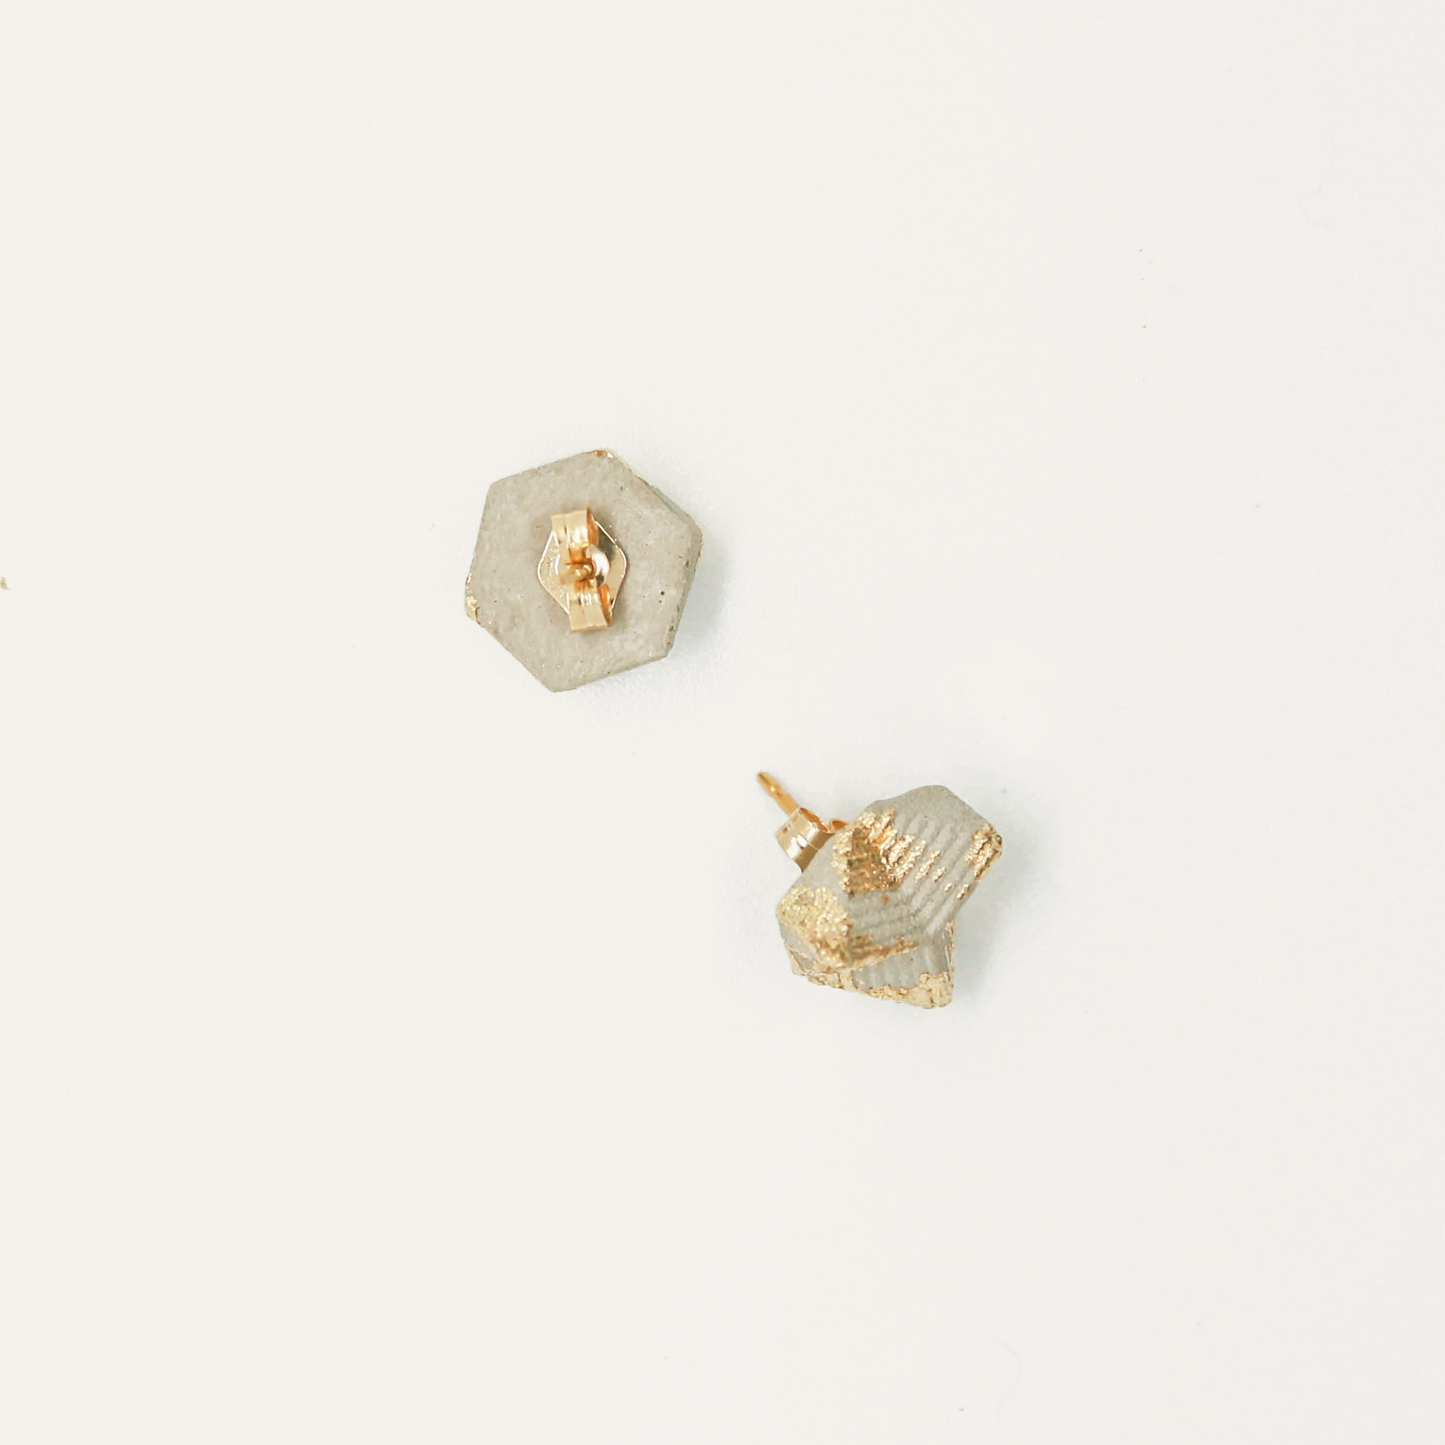 3D Brick Stud Earrings - Grey/Gold